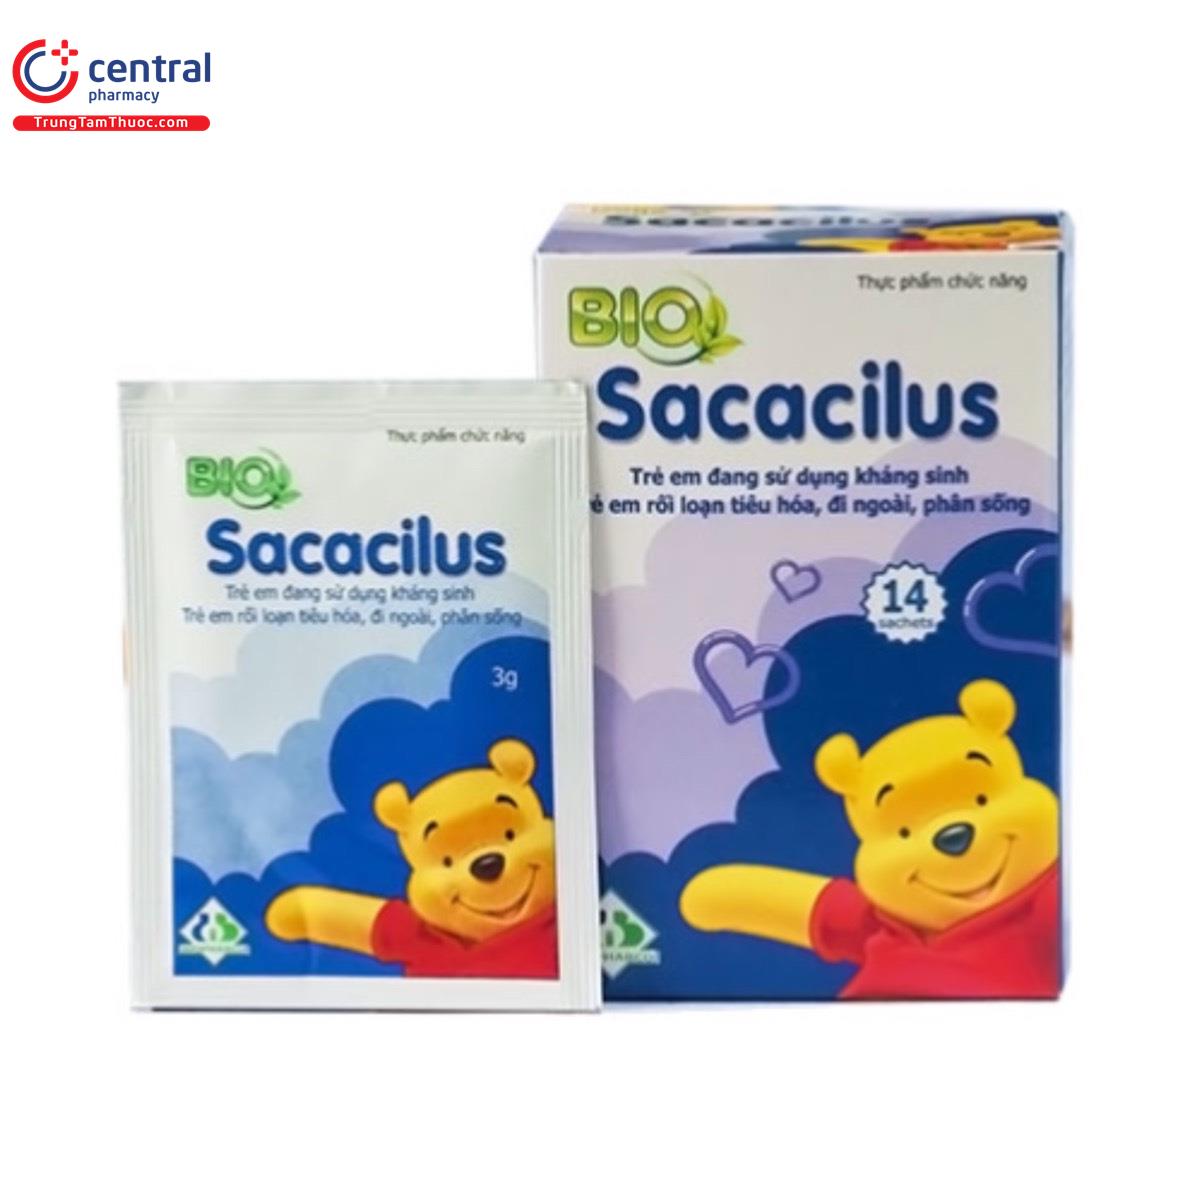 sacacilus 2 C1835